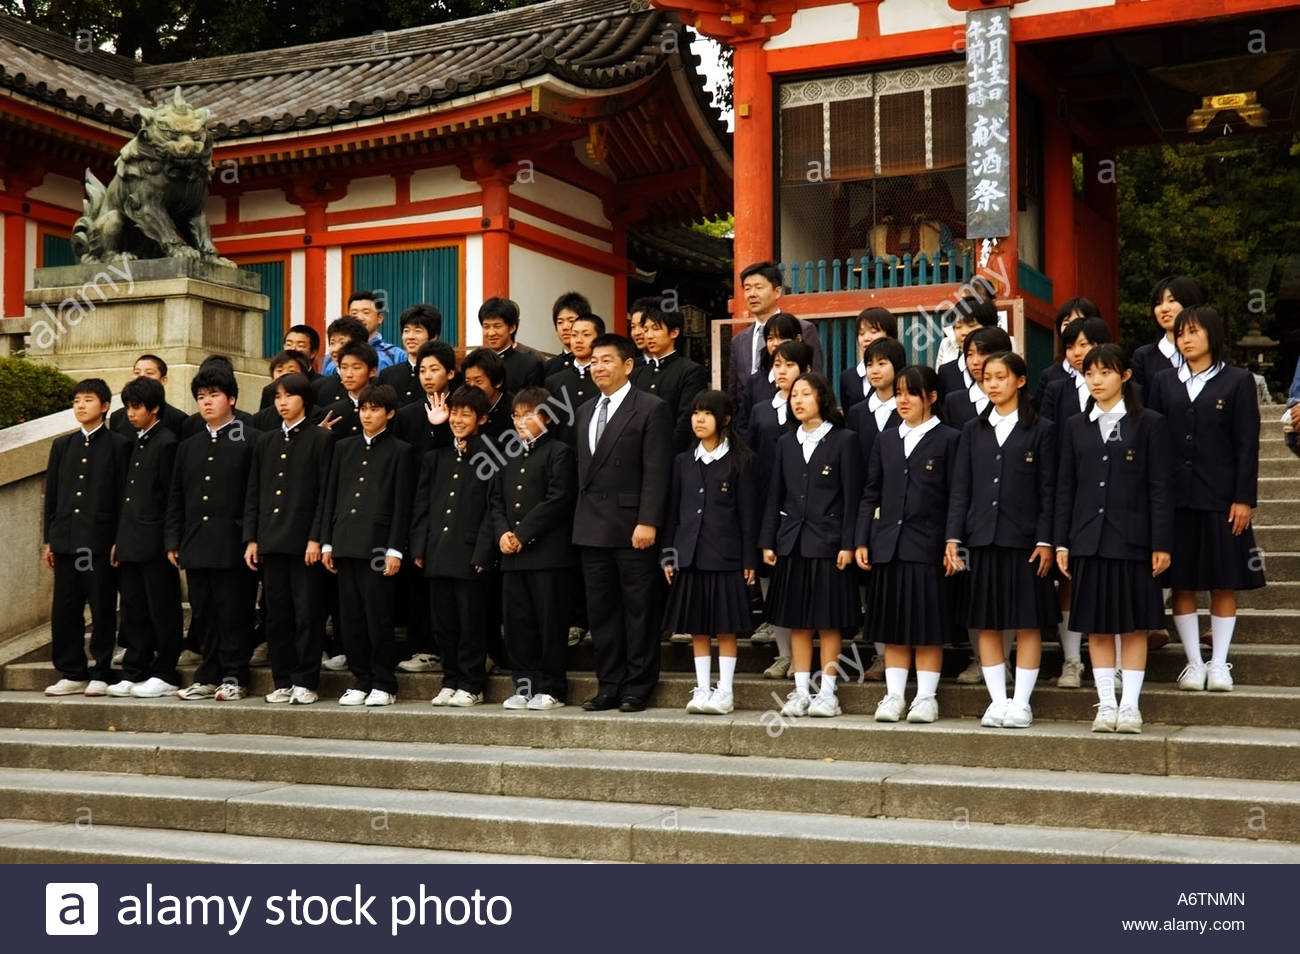 Японская система образования: особенности обучения, интересные факты